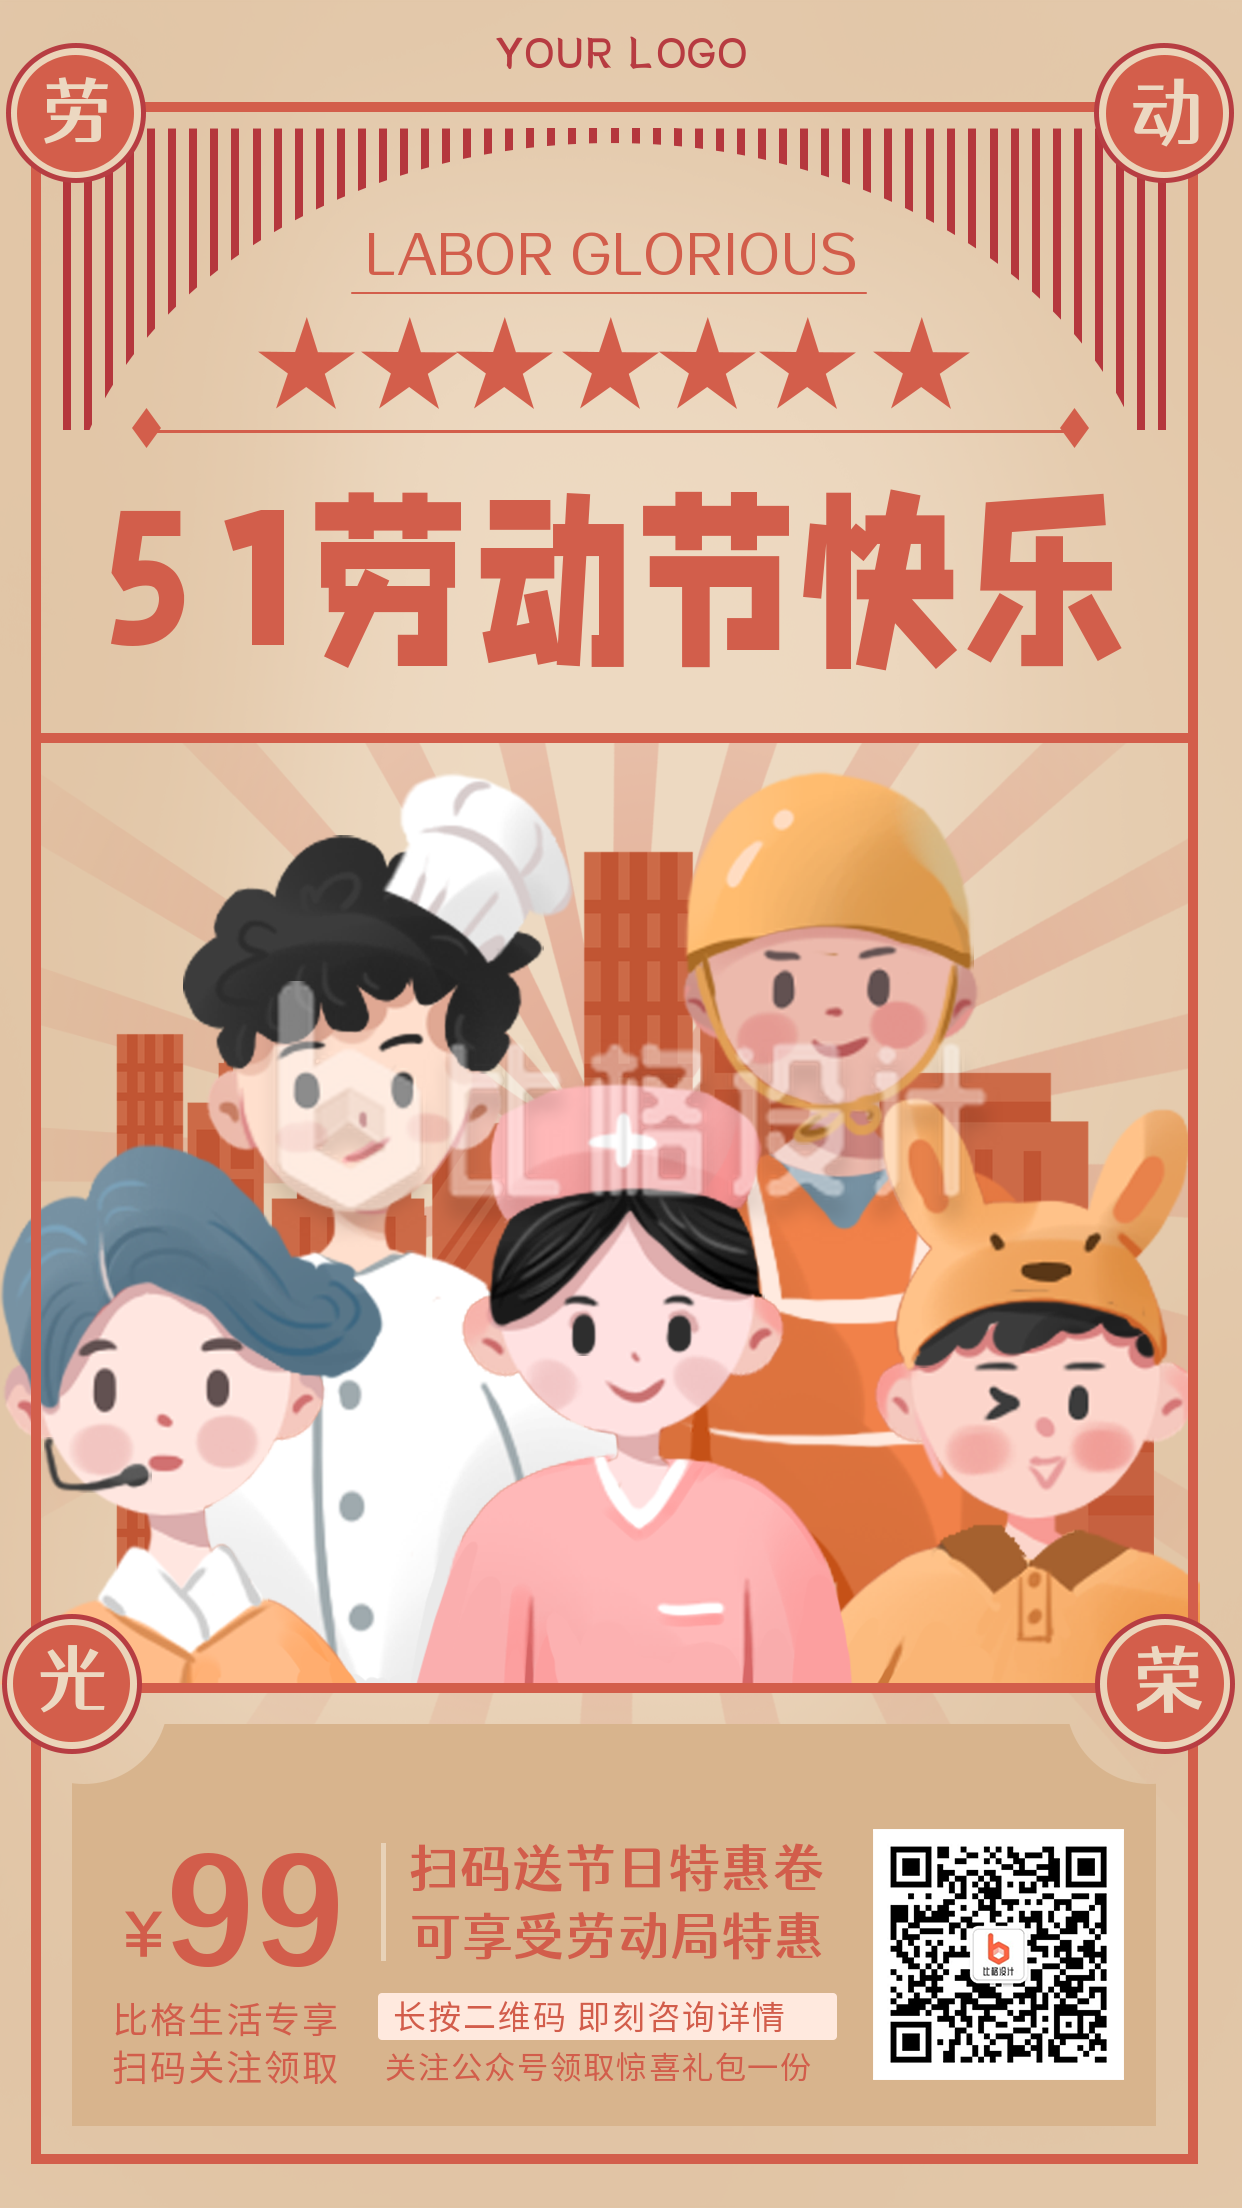 复古风五一劳动节节日活动促销宣传手机海报